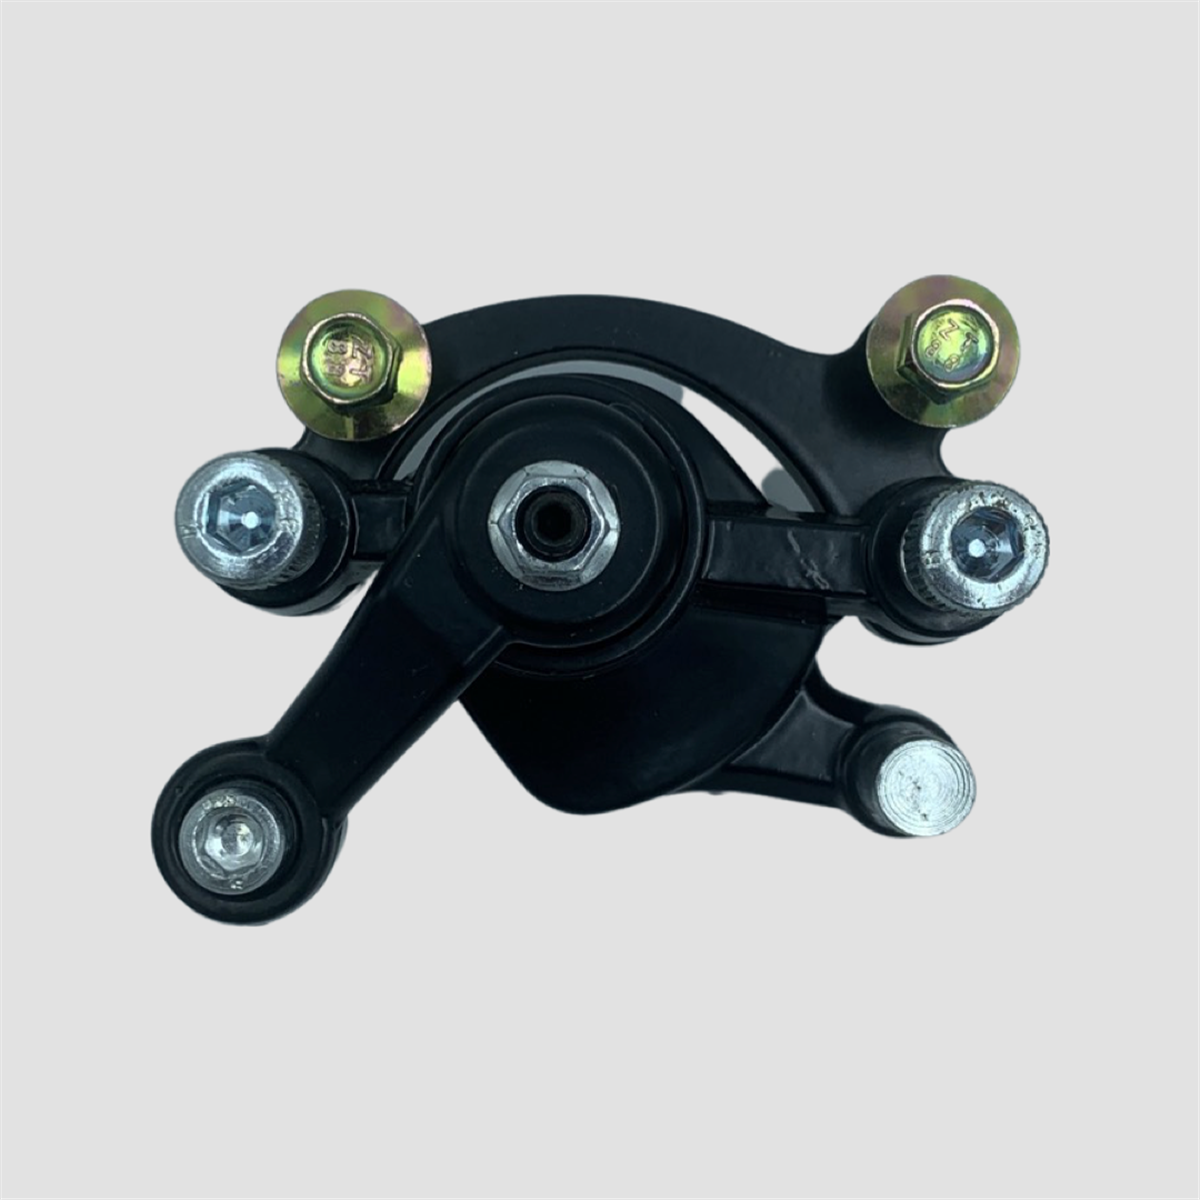 Etrier de frein mécanique | Smallmx - Dirt bike, Pit bike, Quads, Minimoto